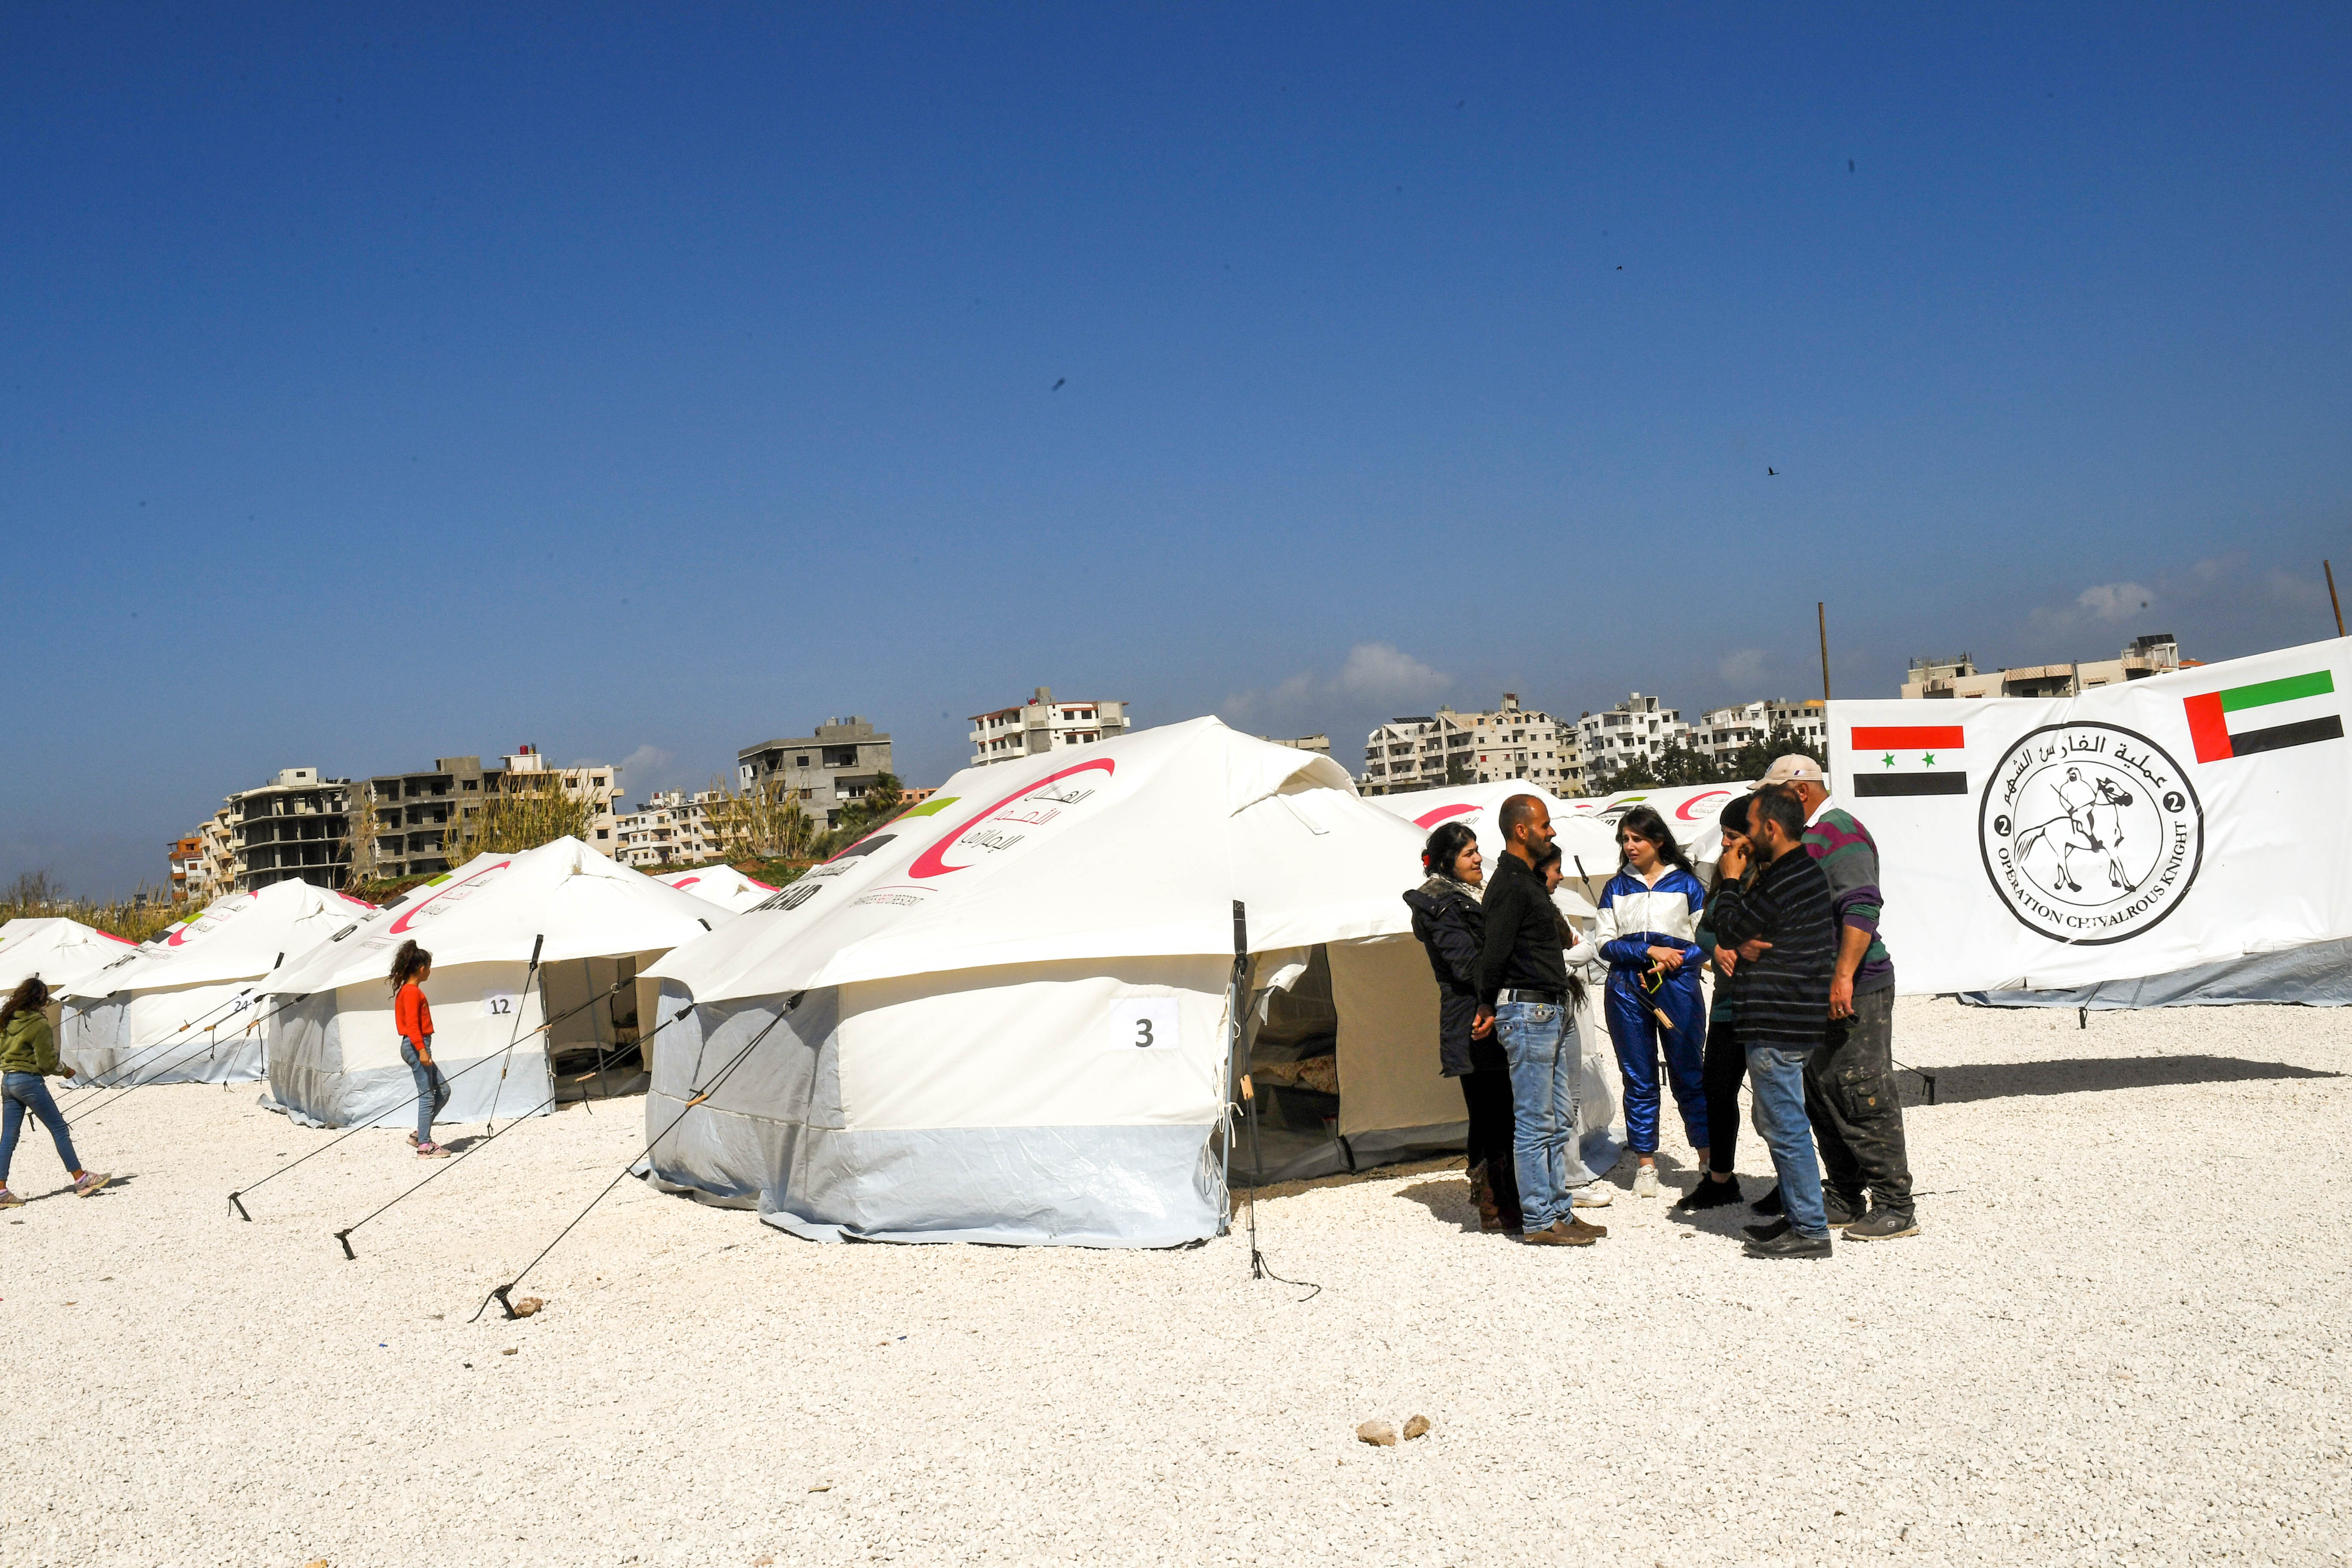 الهلال الأحمر الإماراتي يفتتح مخيم إيواء مؤقتا للمتضررين من زلزال سوريا